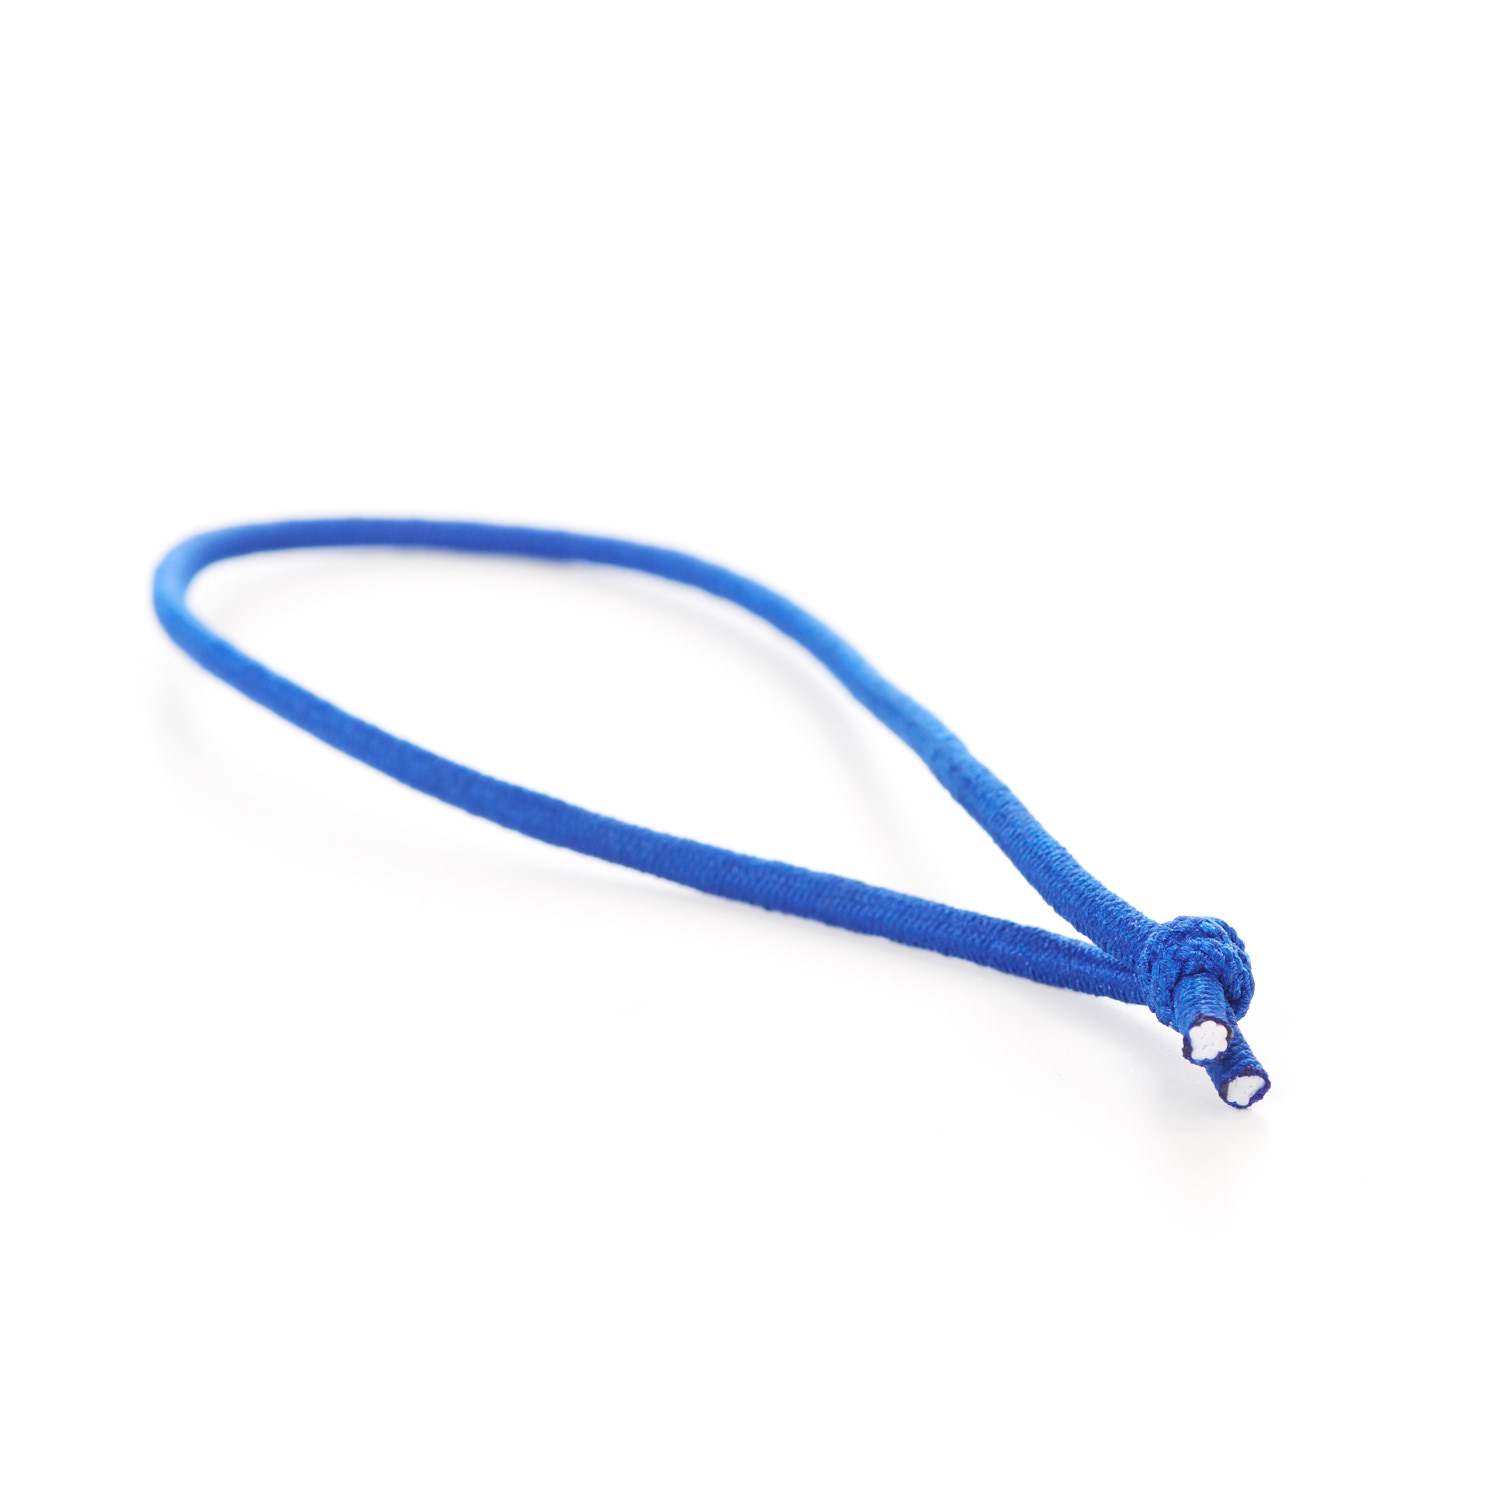 Knotted Elastic Loops Tied Menu Loop Blue